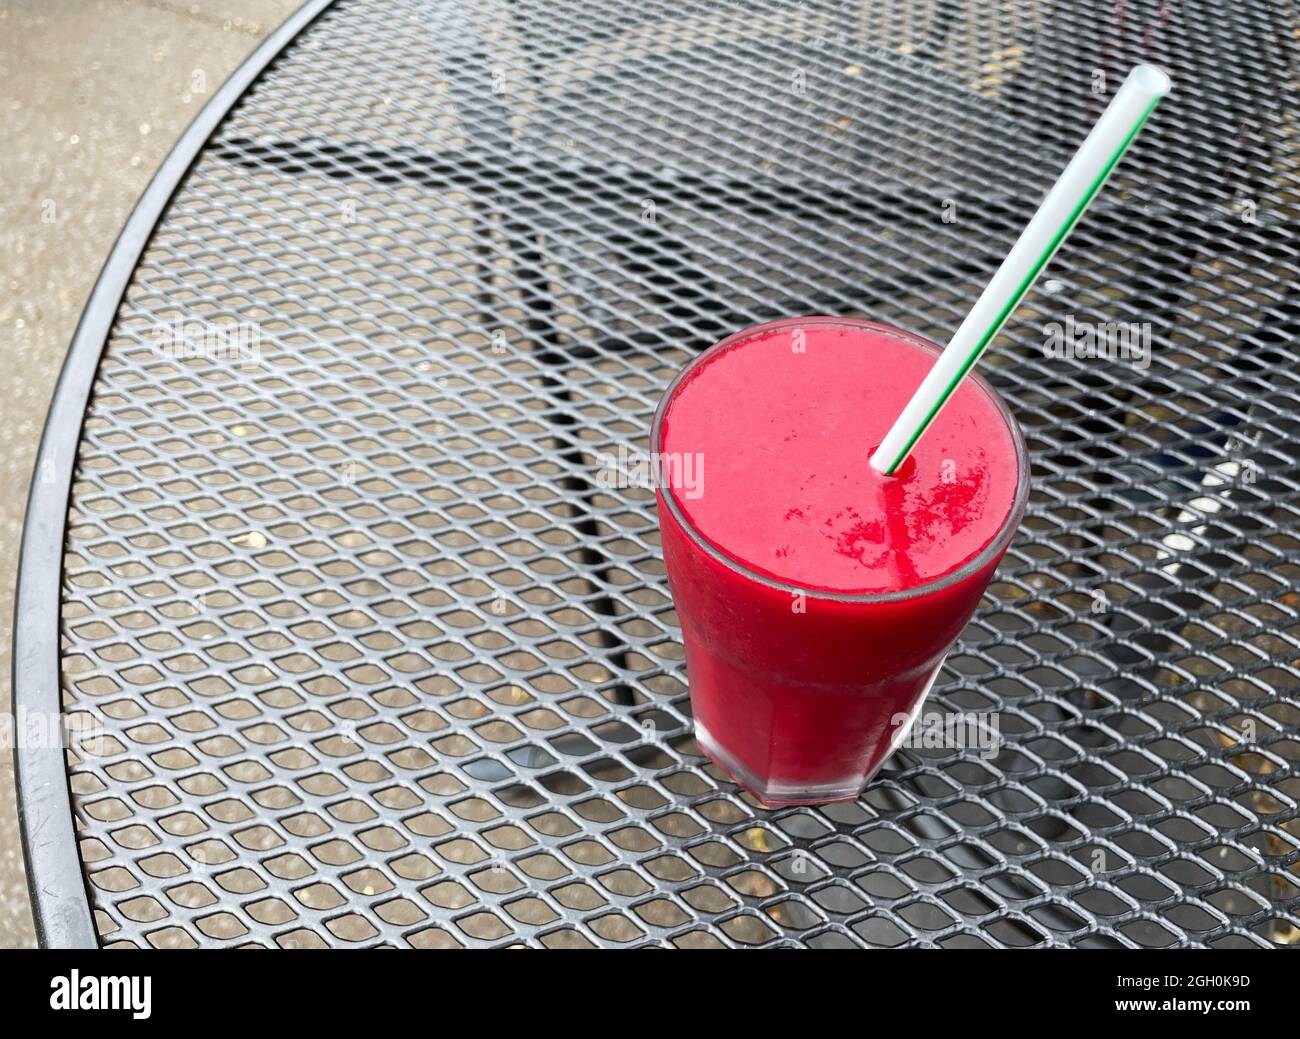 Ein klares Glas mit rotem Fruchtgetränk auf der Basis von Smoothie Bete, von oben betrachtet, mit Stroh.Sat auf einem kontrastierenden schwarzen Gitterwerk Stockfoto